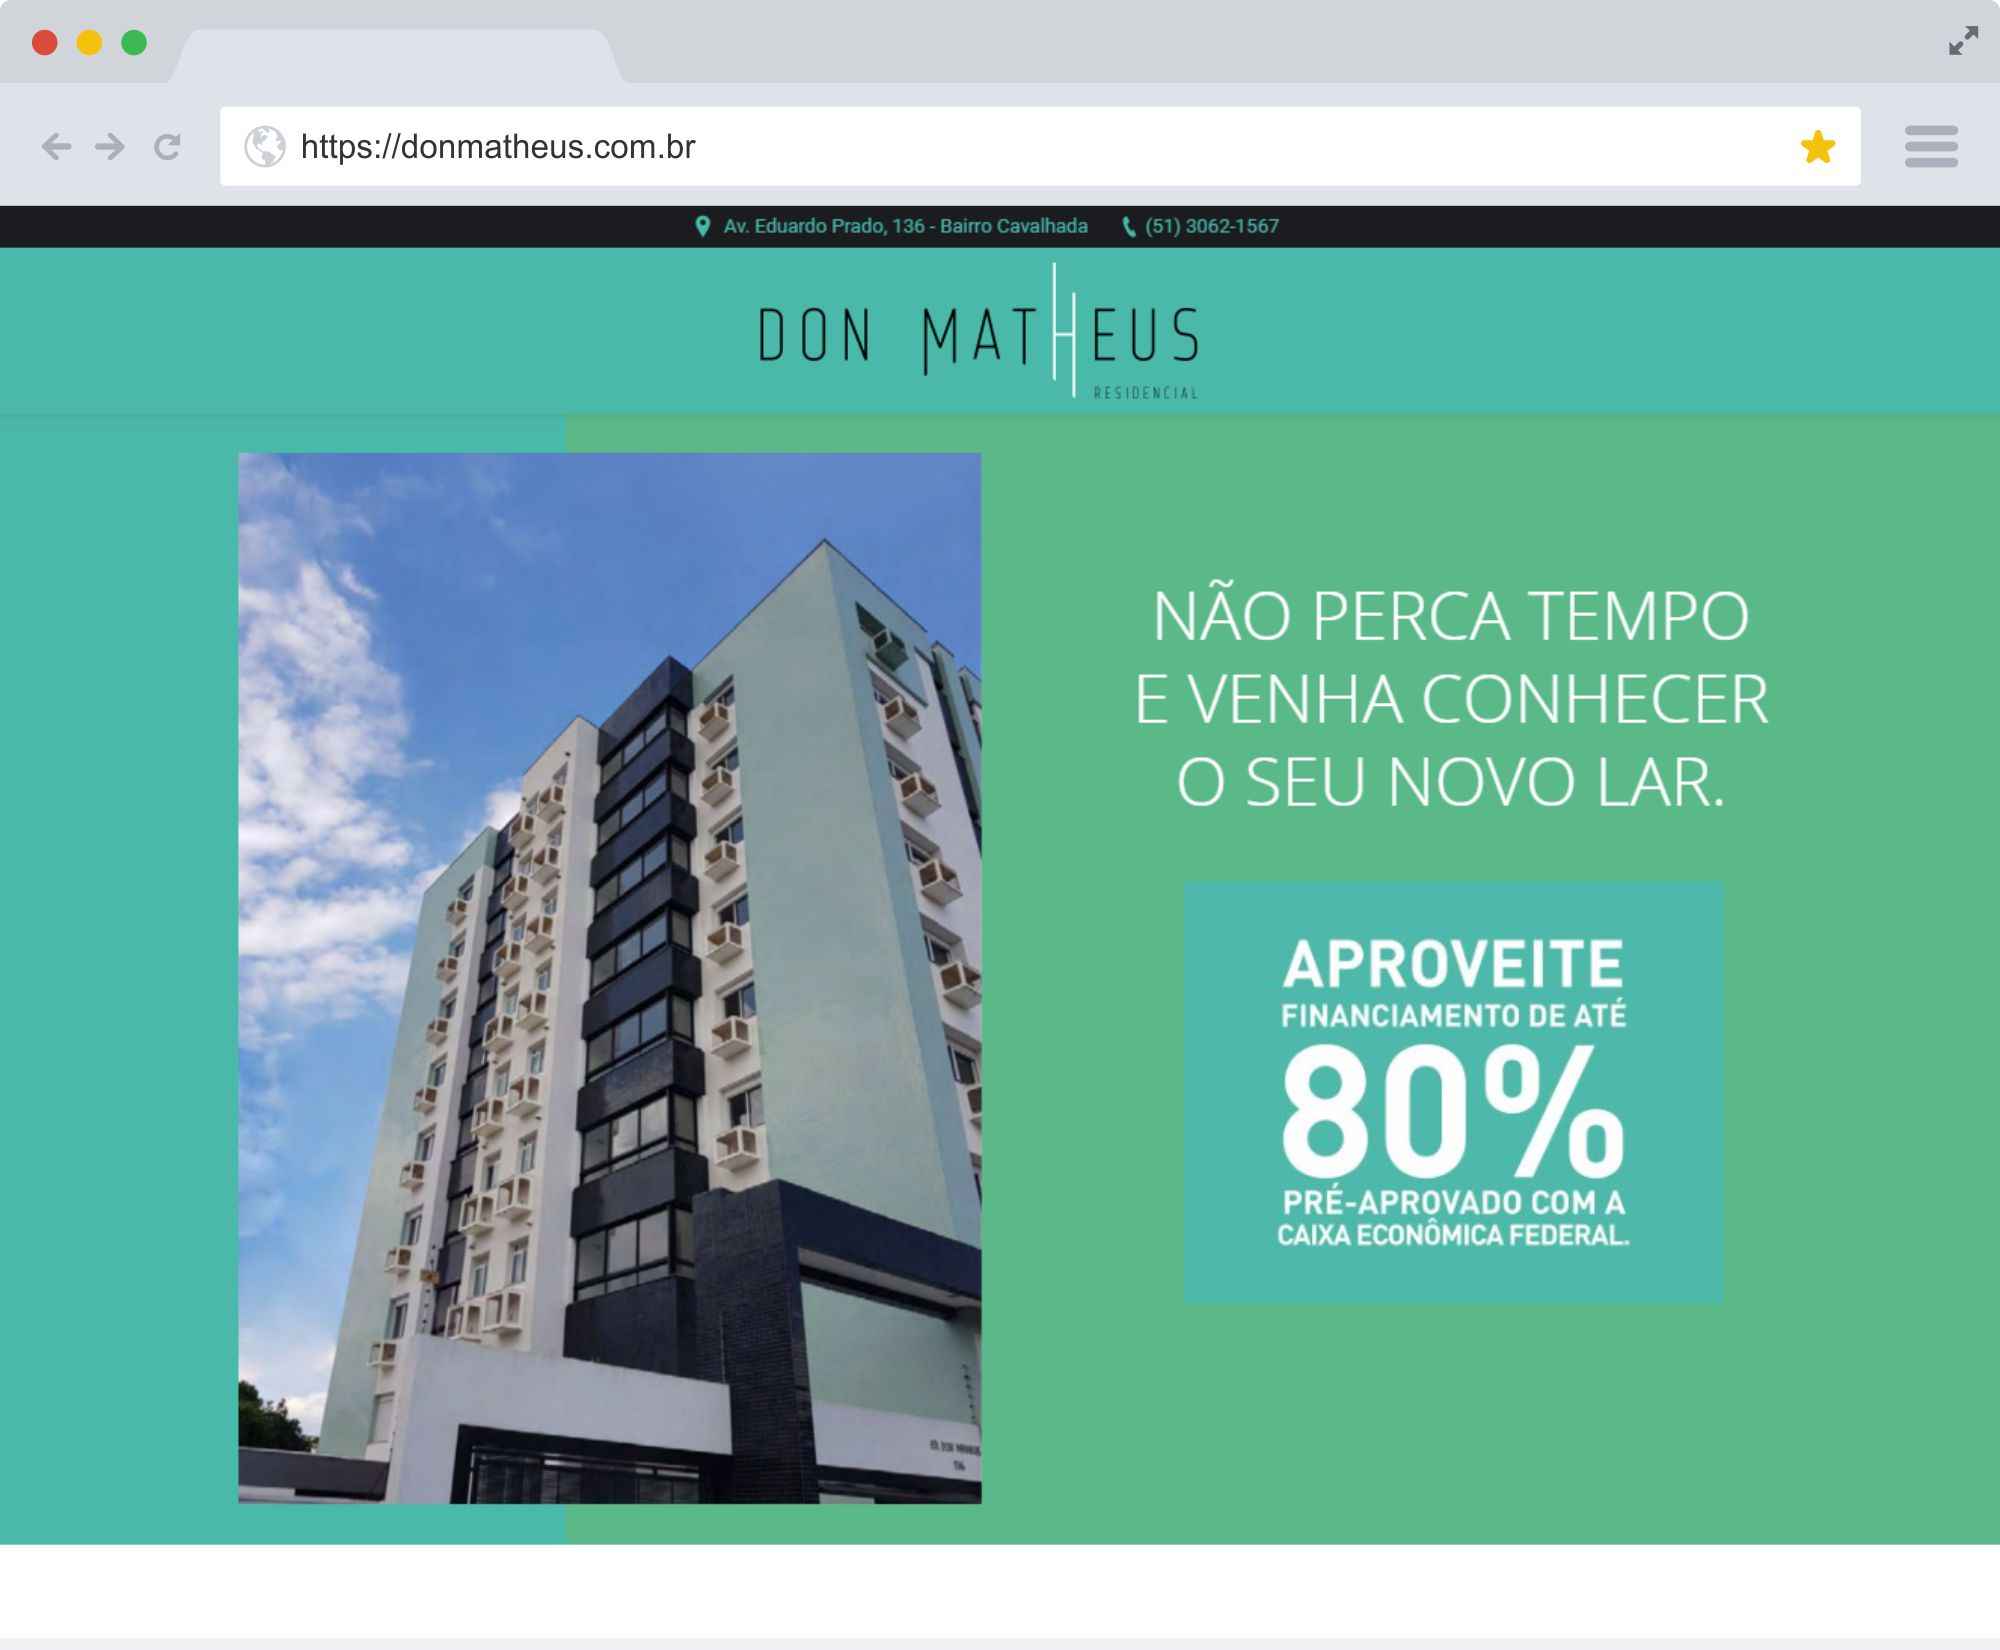 donmatheus.com.br